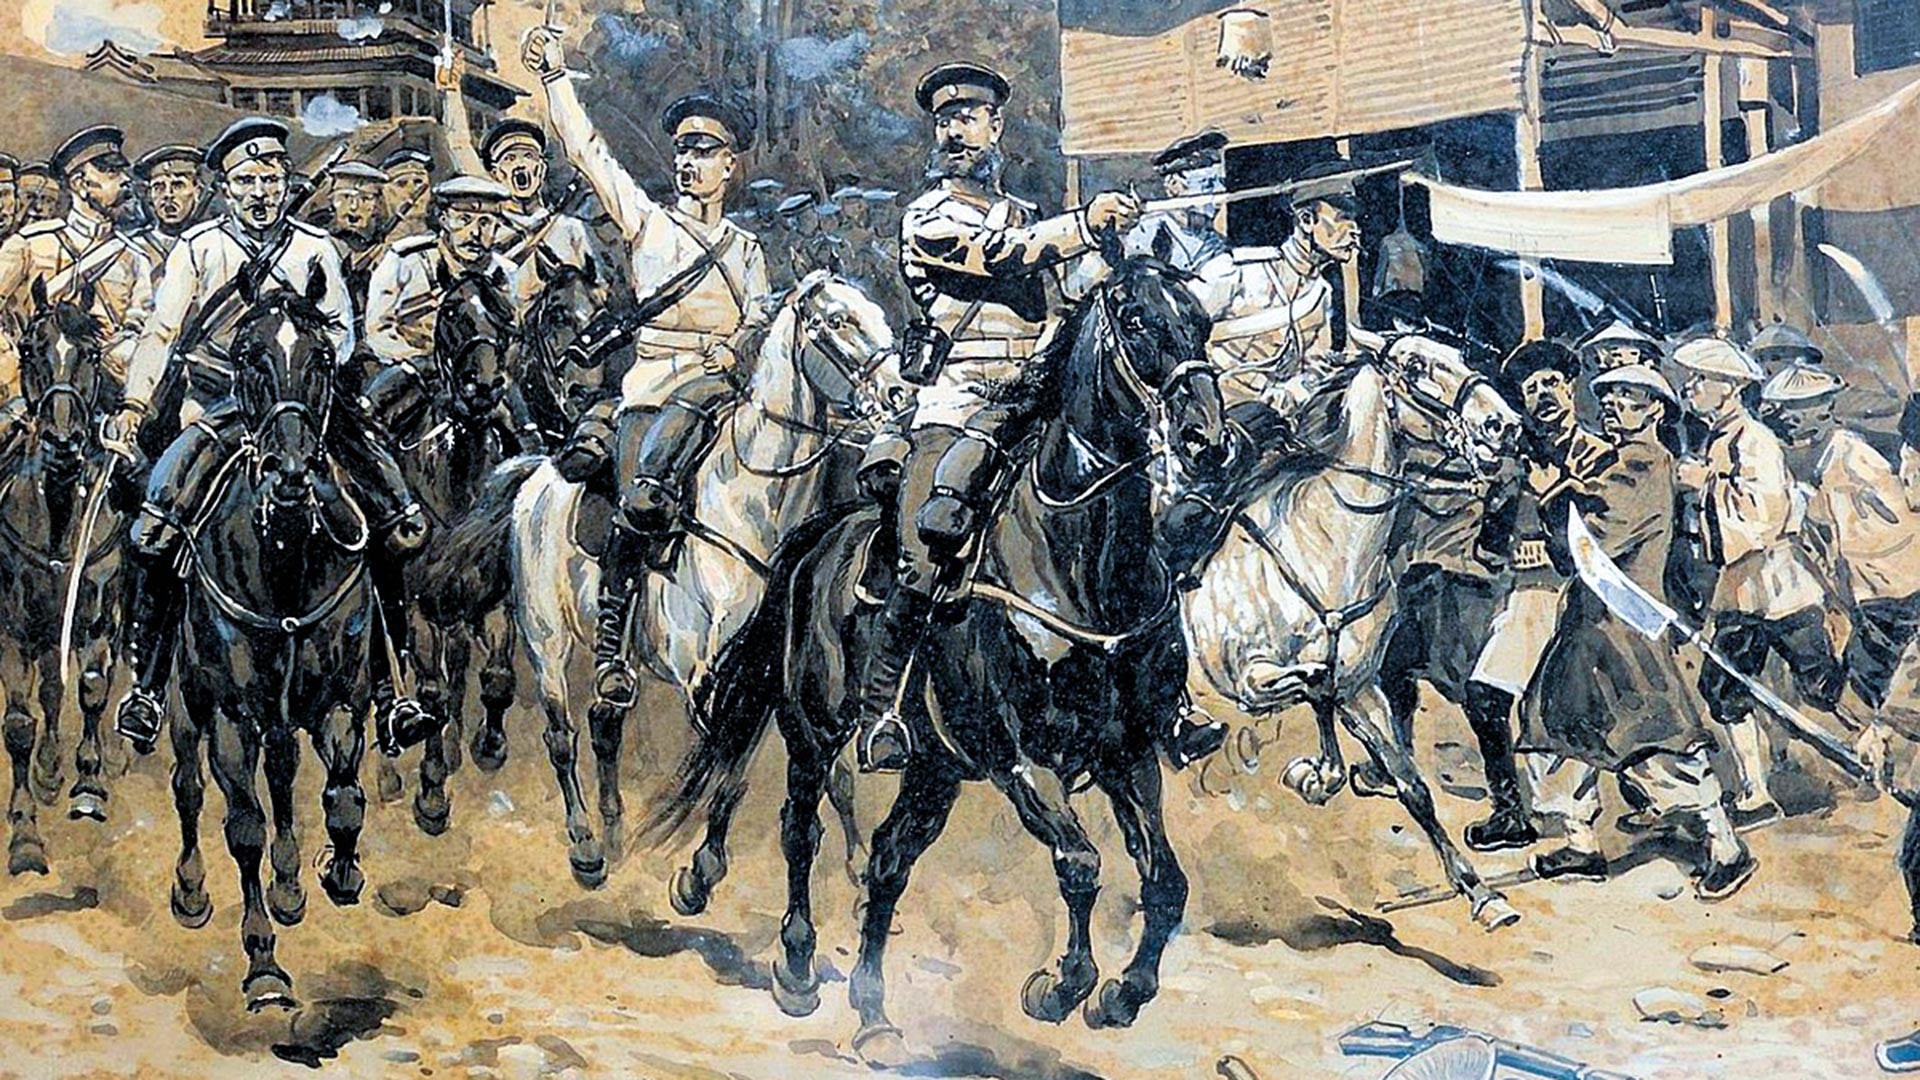 Russische Kavallerie in China während der Niederschlagung des Ihetuan-Aufstands.